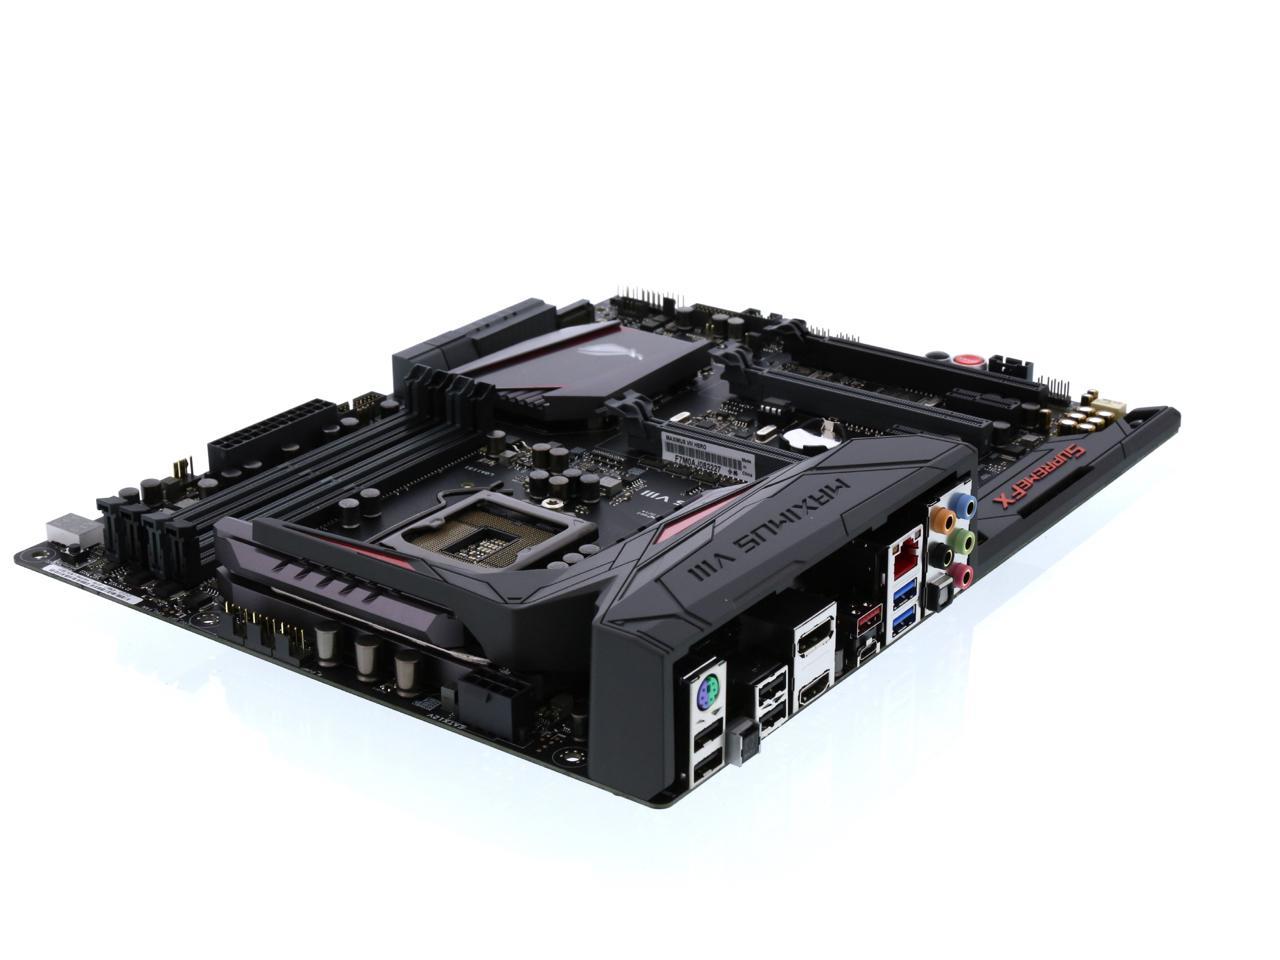 ASUS ROG MAXIMUS VIII HERO LGA 1151 ATX Intel Gaming Motherboard